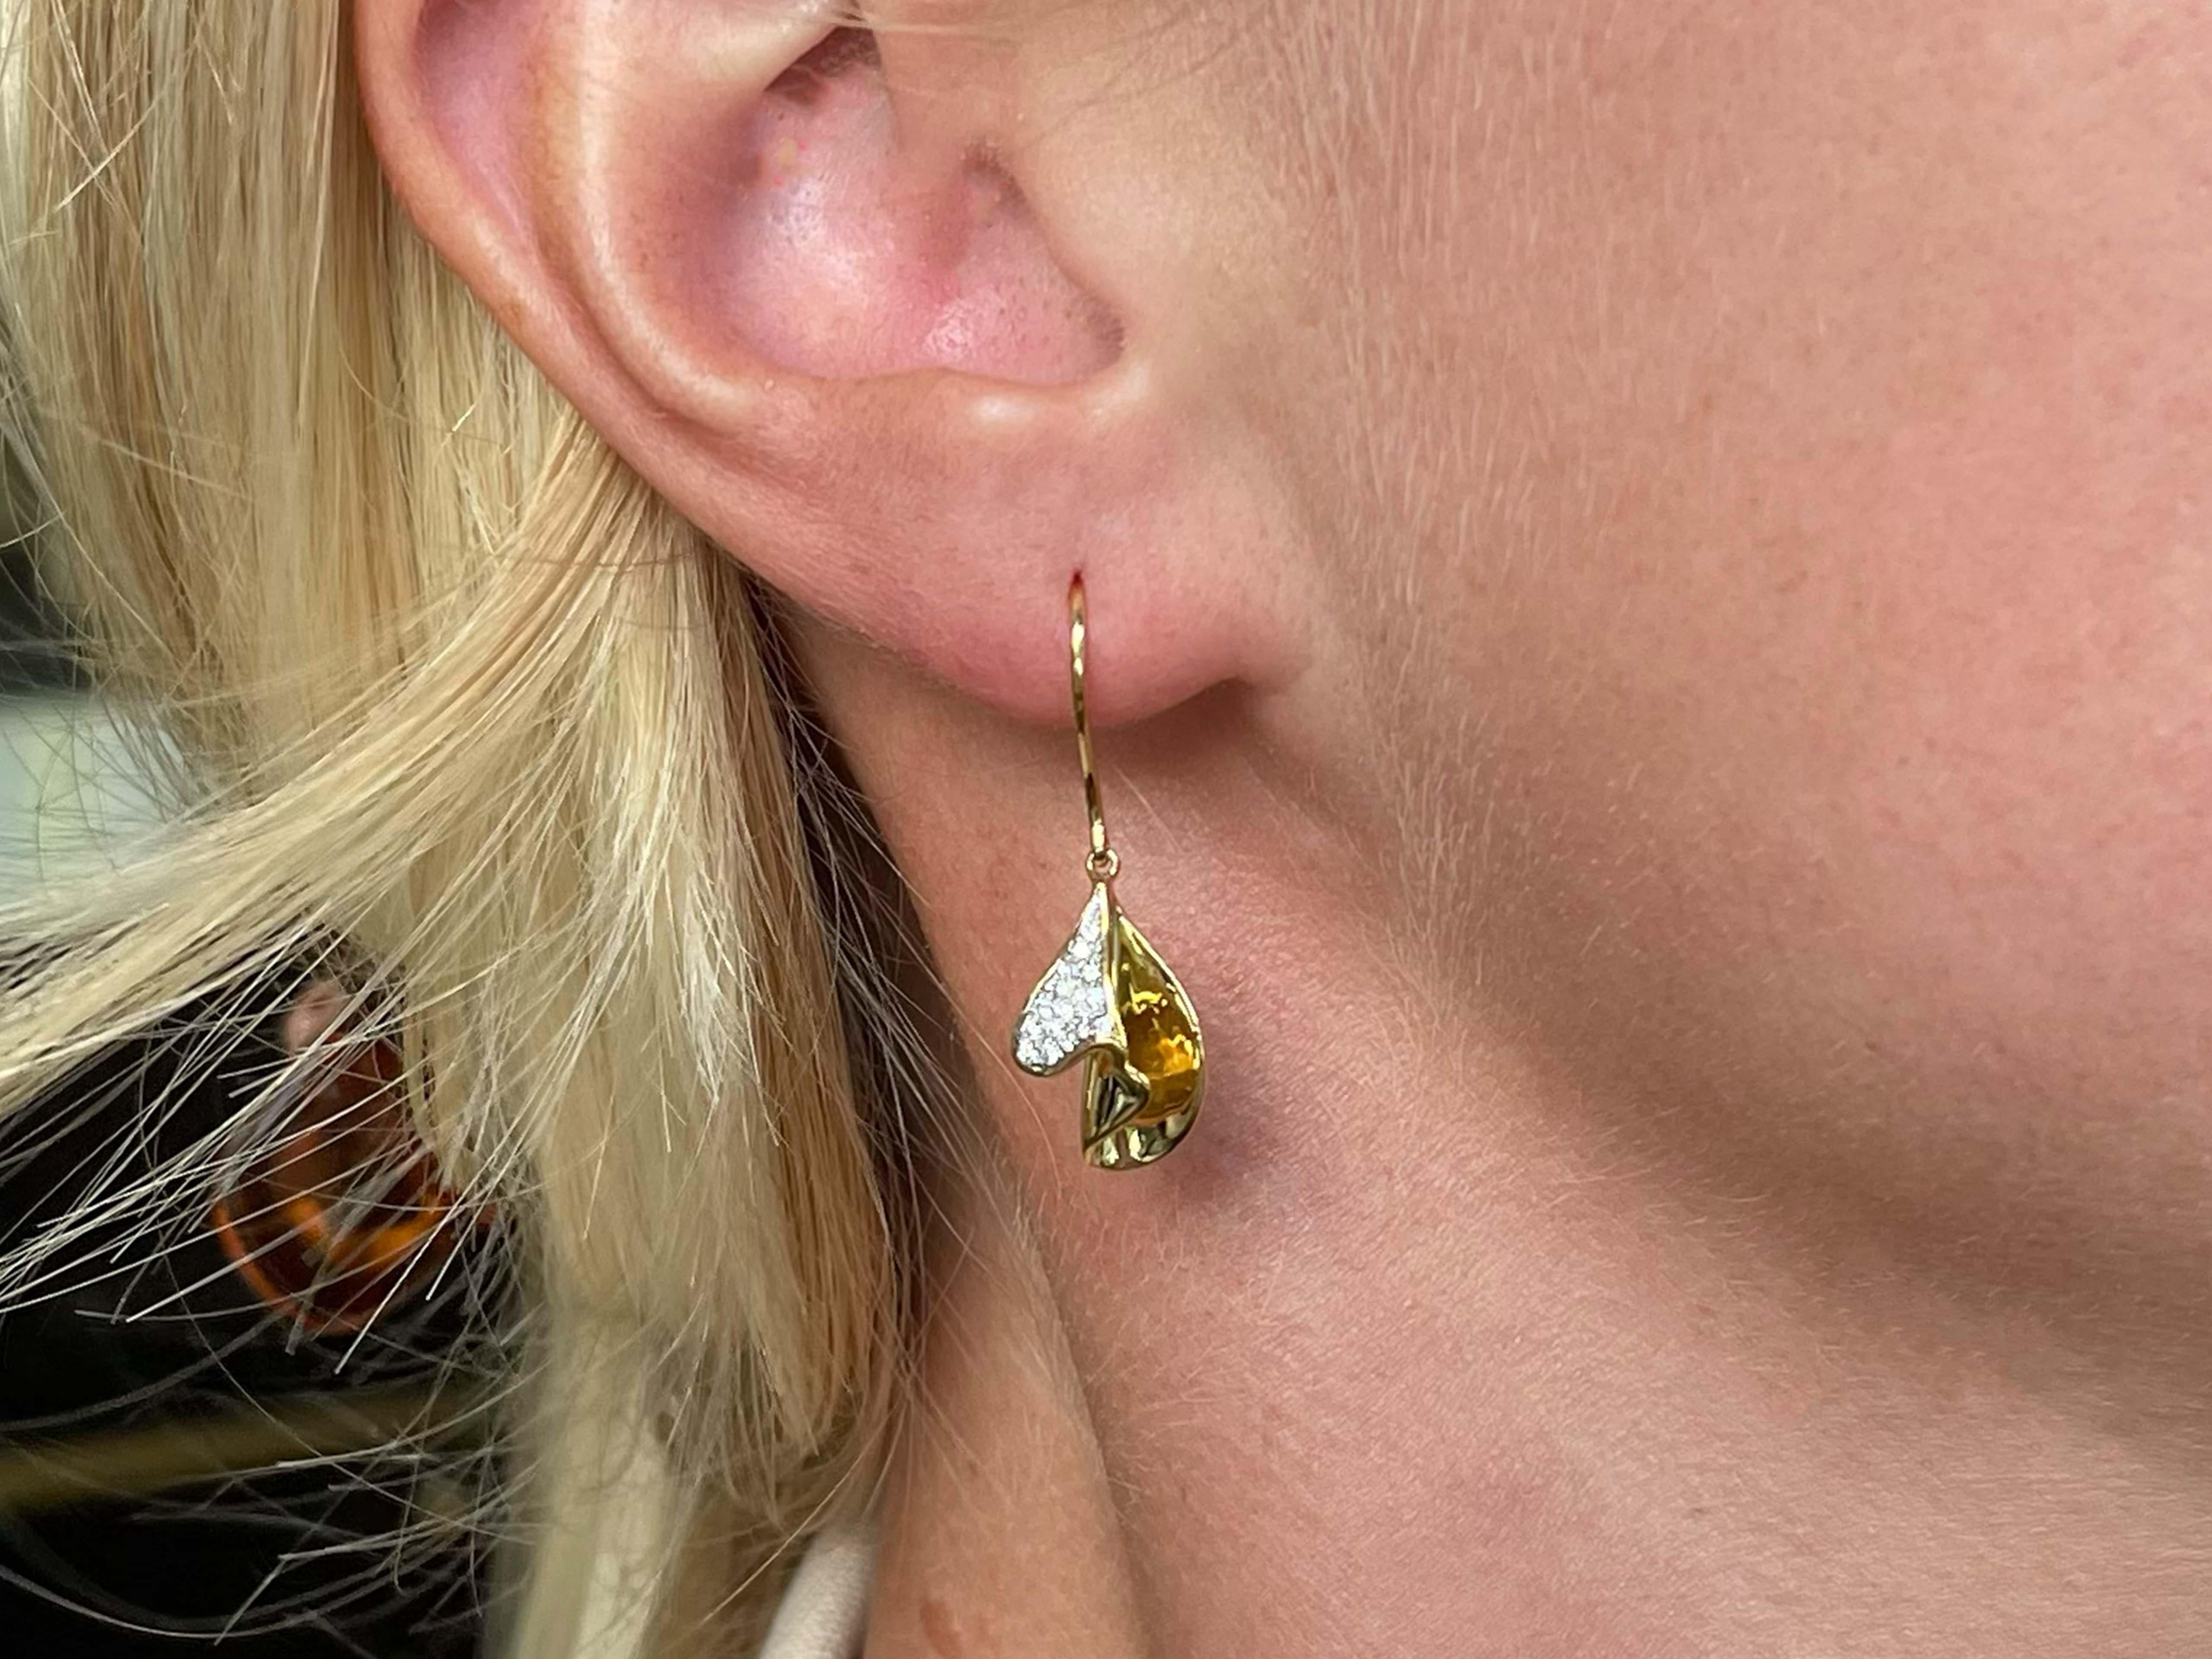 Earrings Specifications:

Metal: 18k Yellow Gold

Earring Diameter: 1